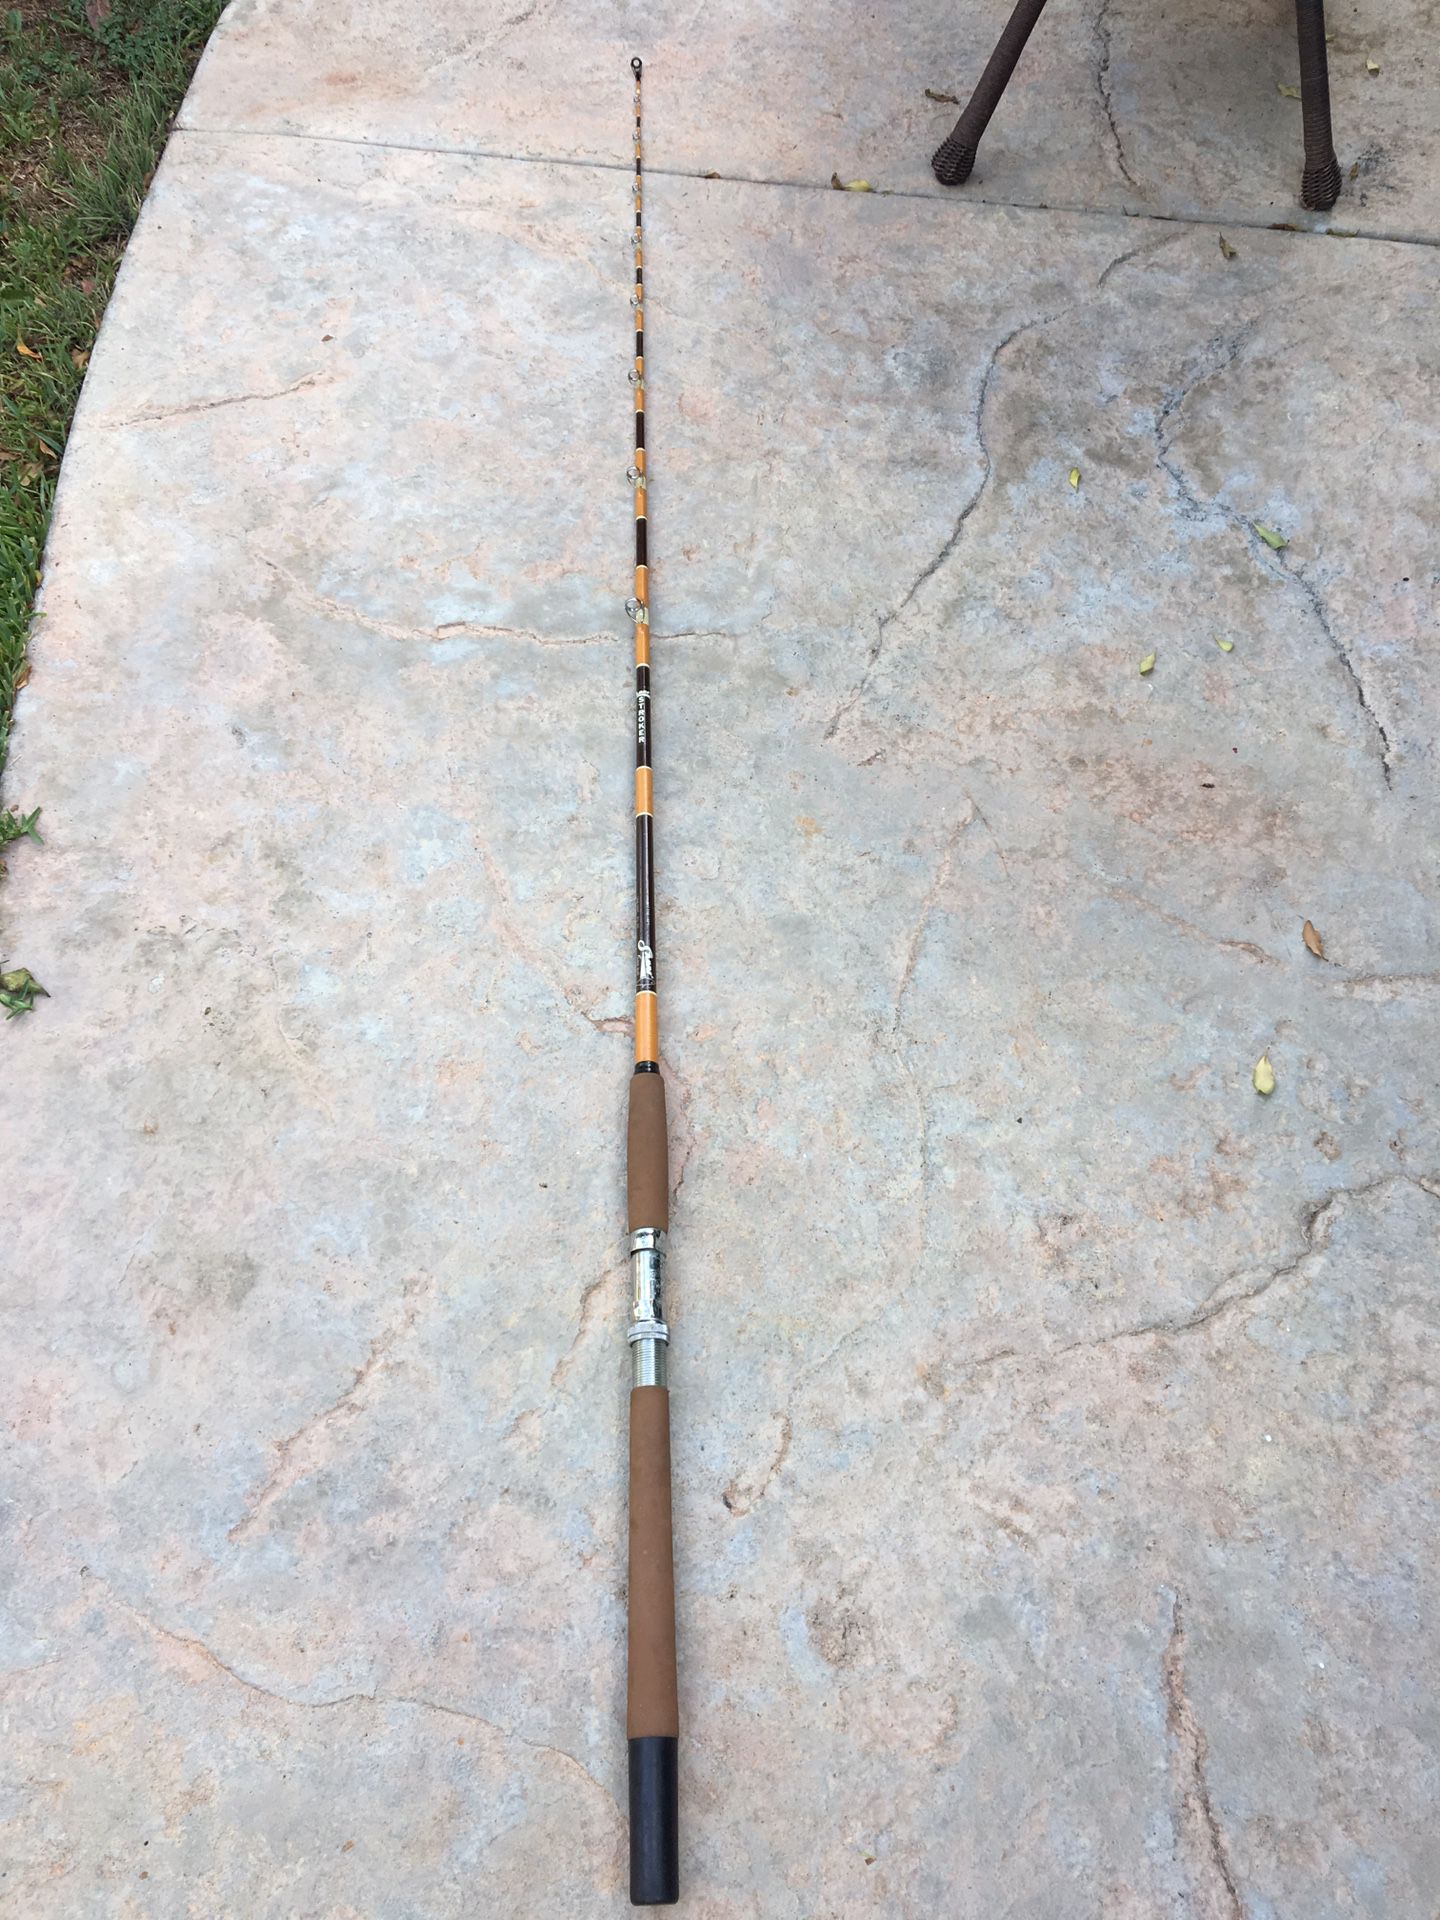 Sabre Fishing Rod